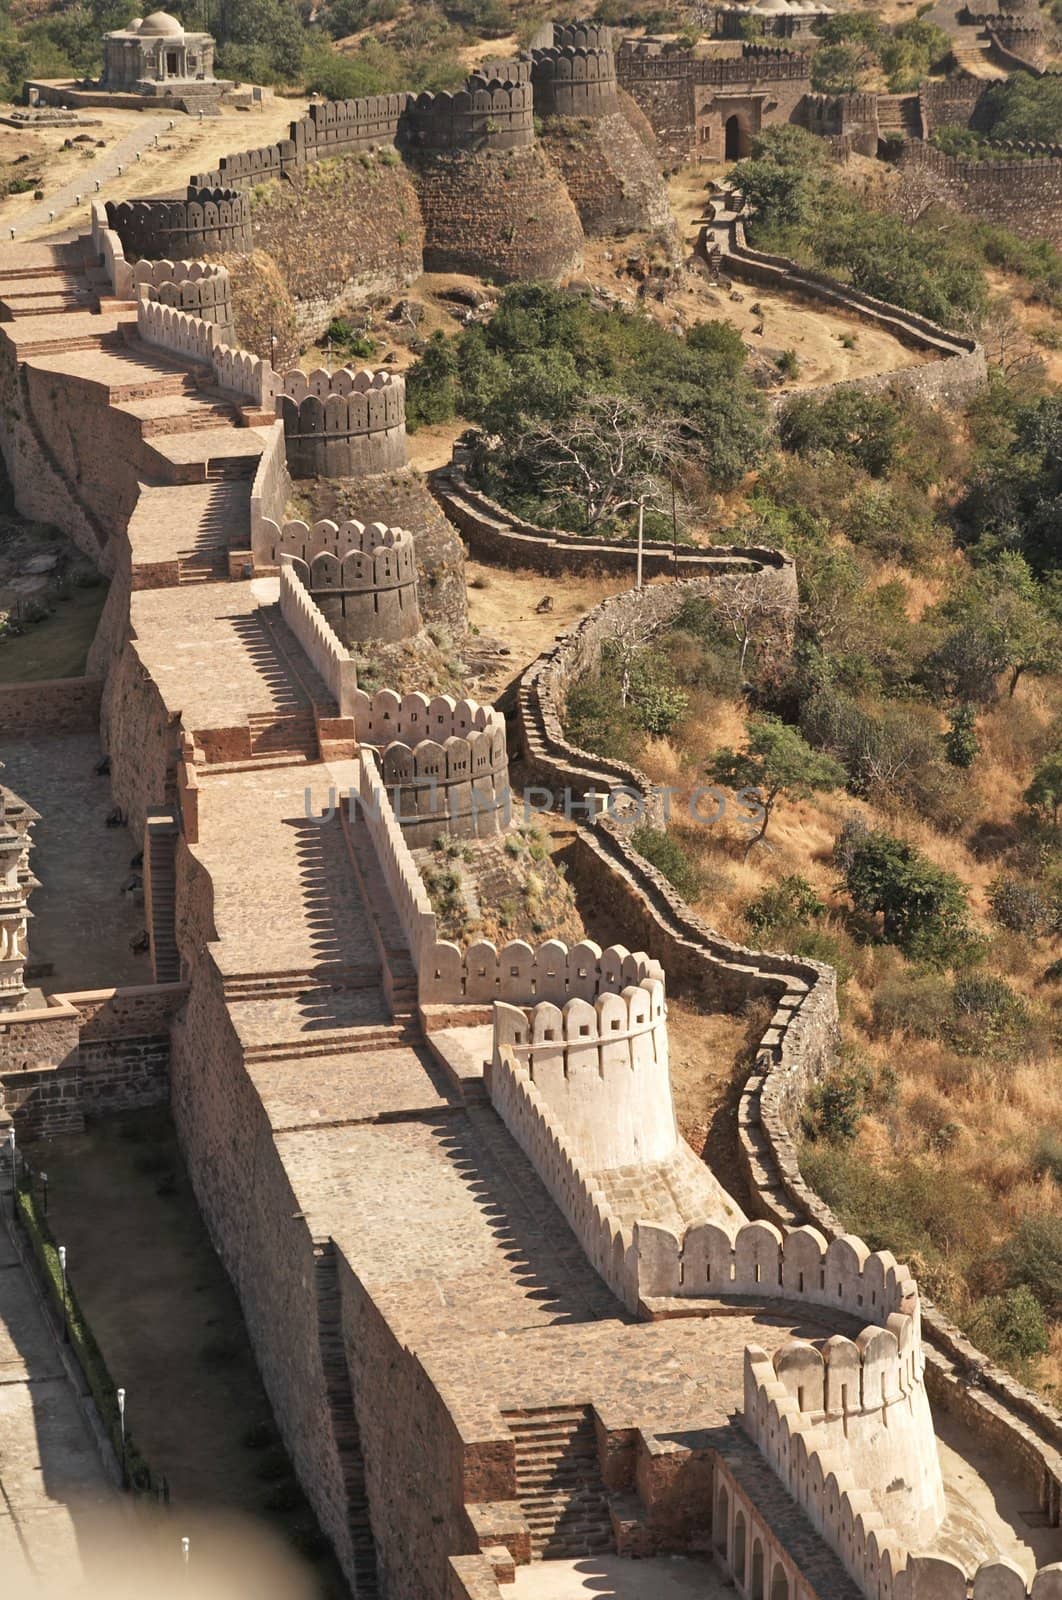 Indian Fortress by JeremyRichards